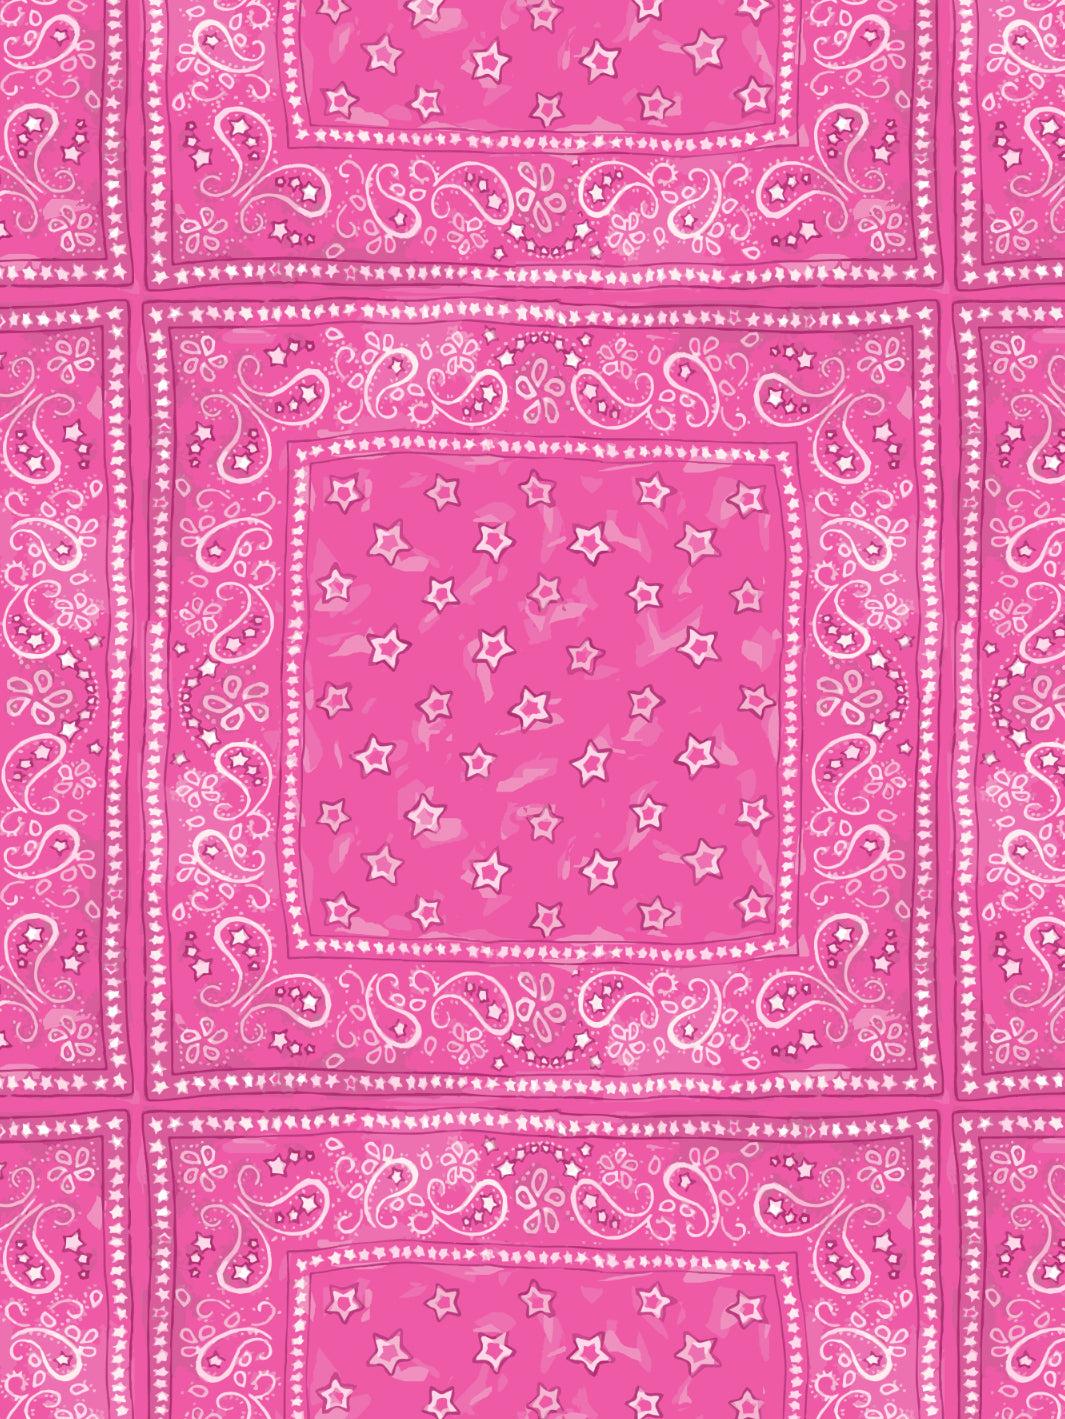 Barbie Bandana Check Wallpaper By Pink